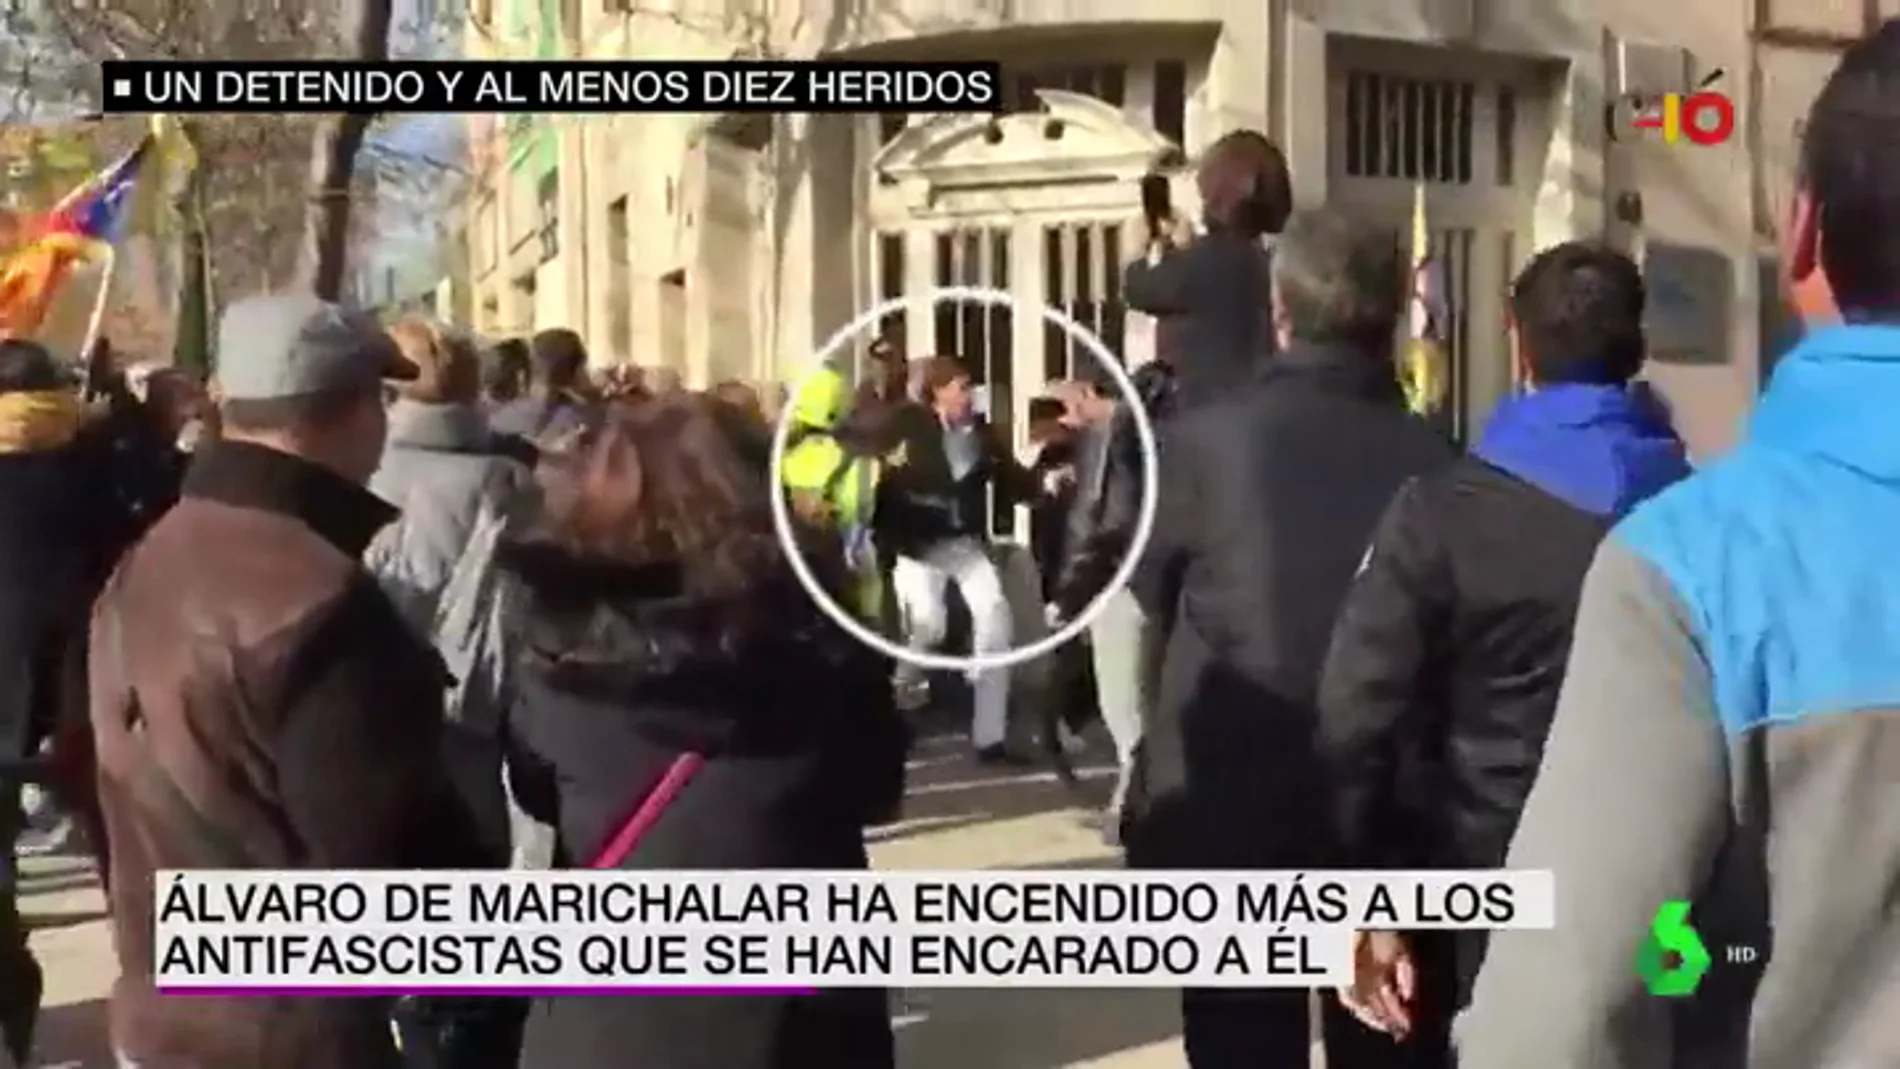 Álvaro de Marichalar intenta reventar una manifestación antifascista durante la batalla campal de Girona